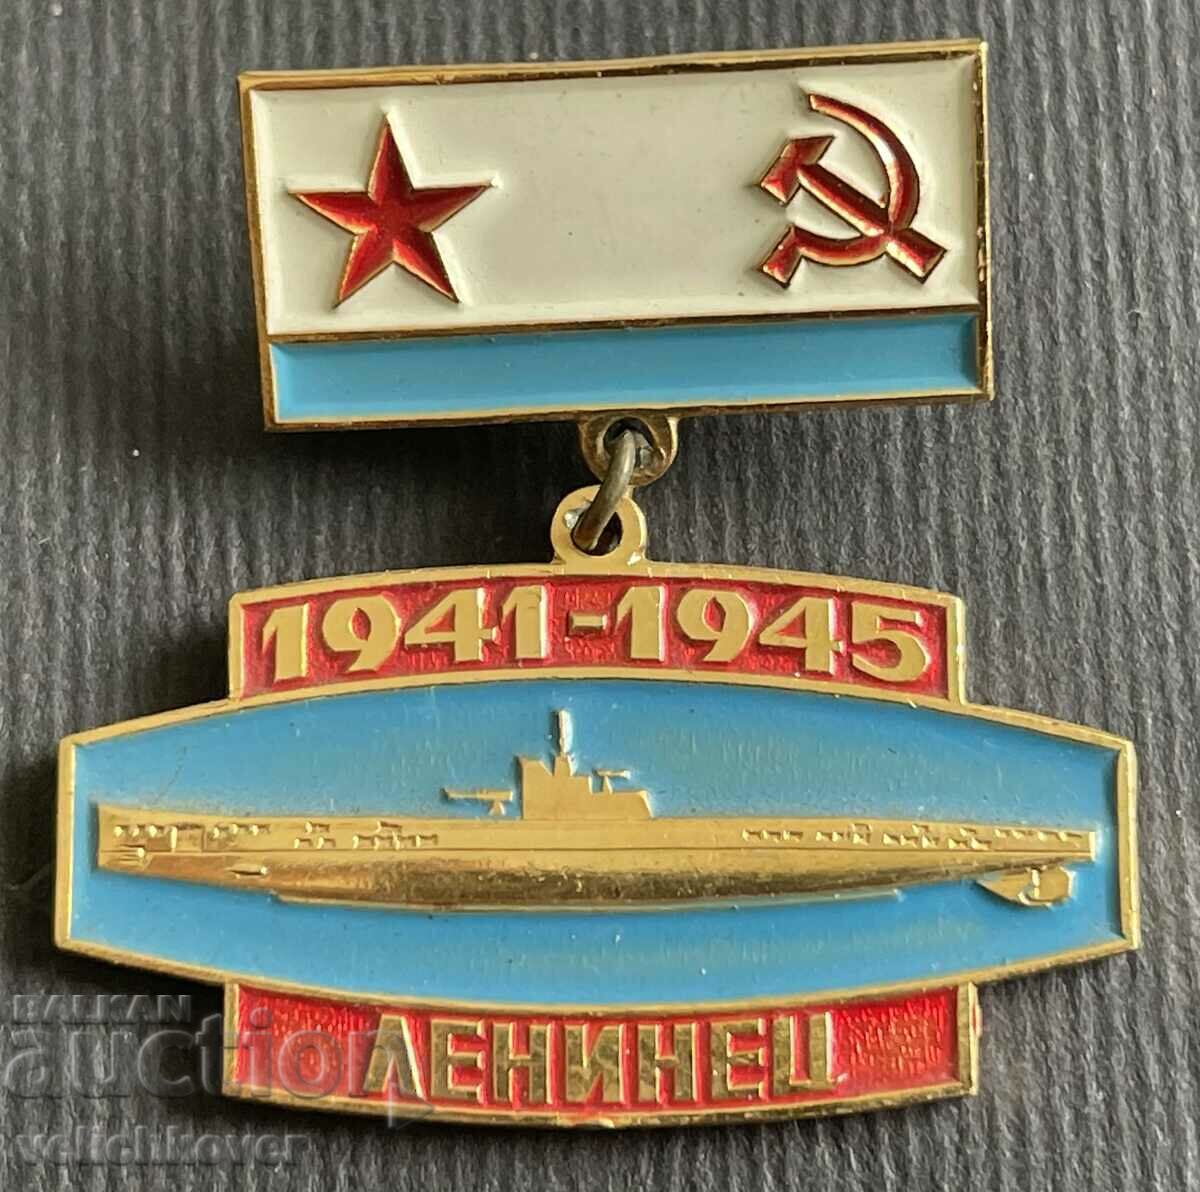 36894 Στρατιωτικά διακριτικά της ΕΣΣΔ Σοβιετικό υποείδος VSV μοντέλο Leninets